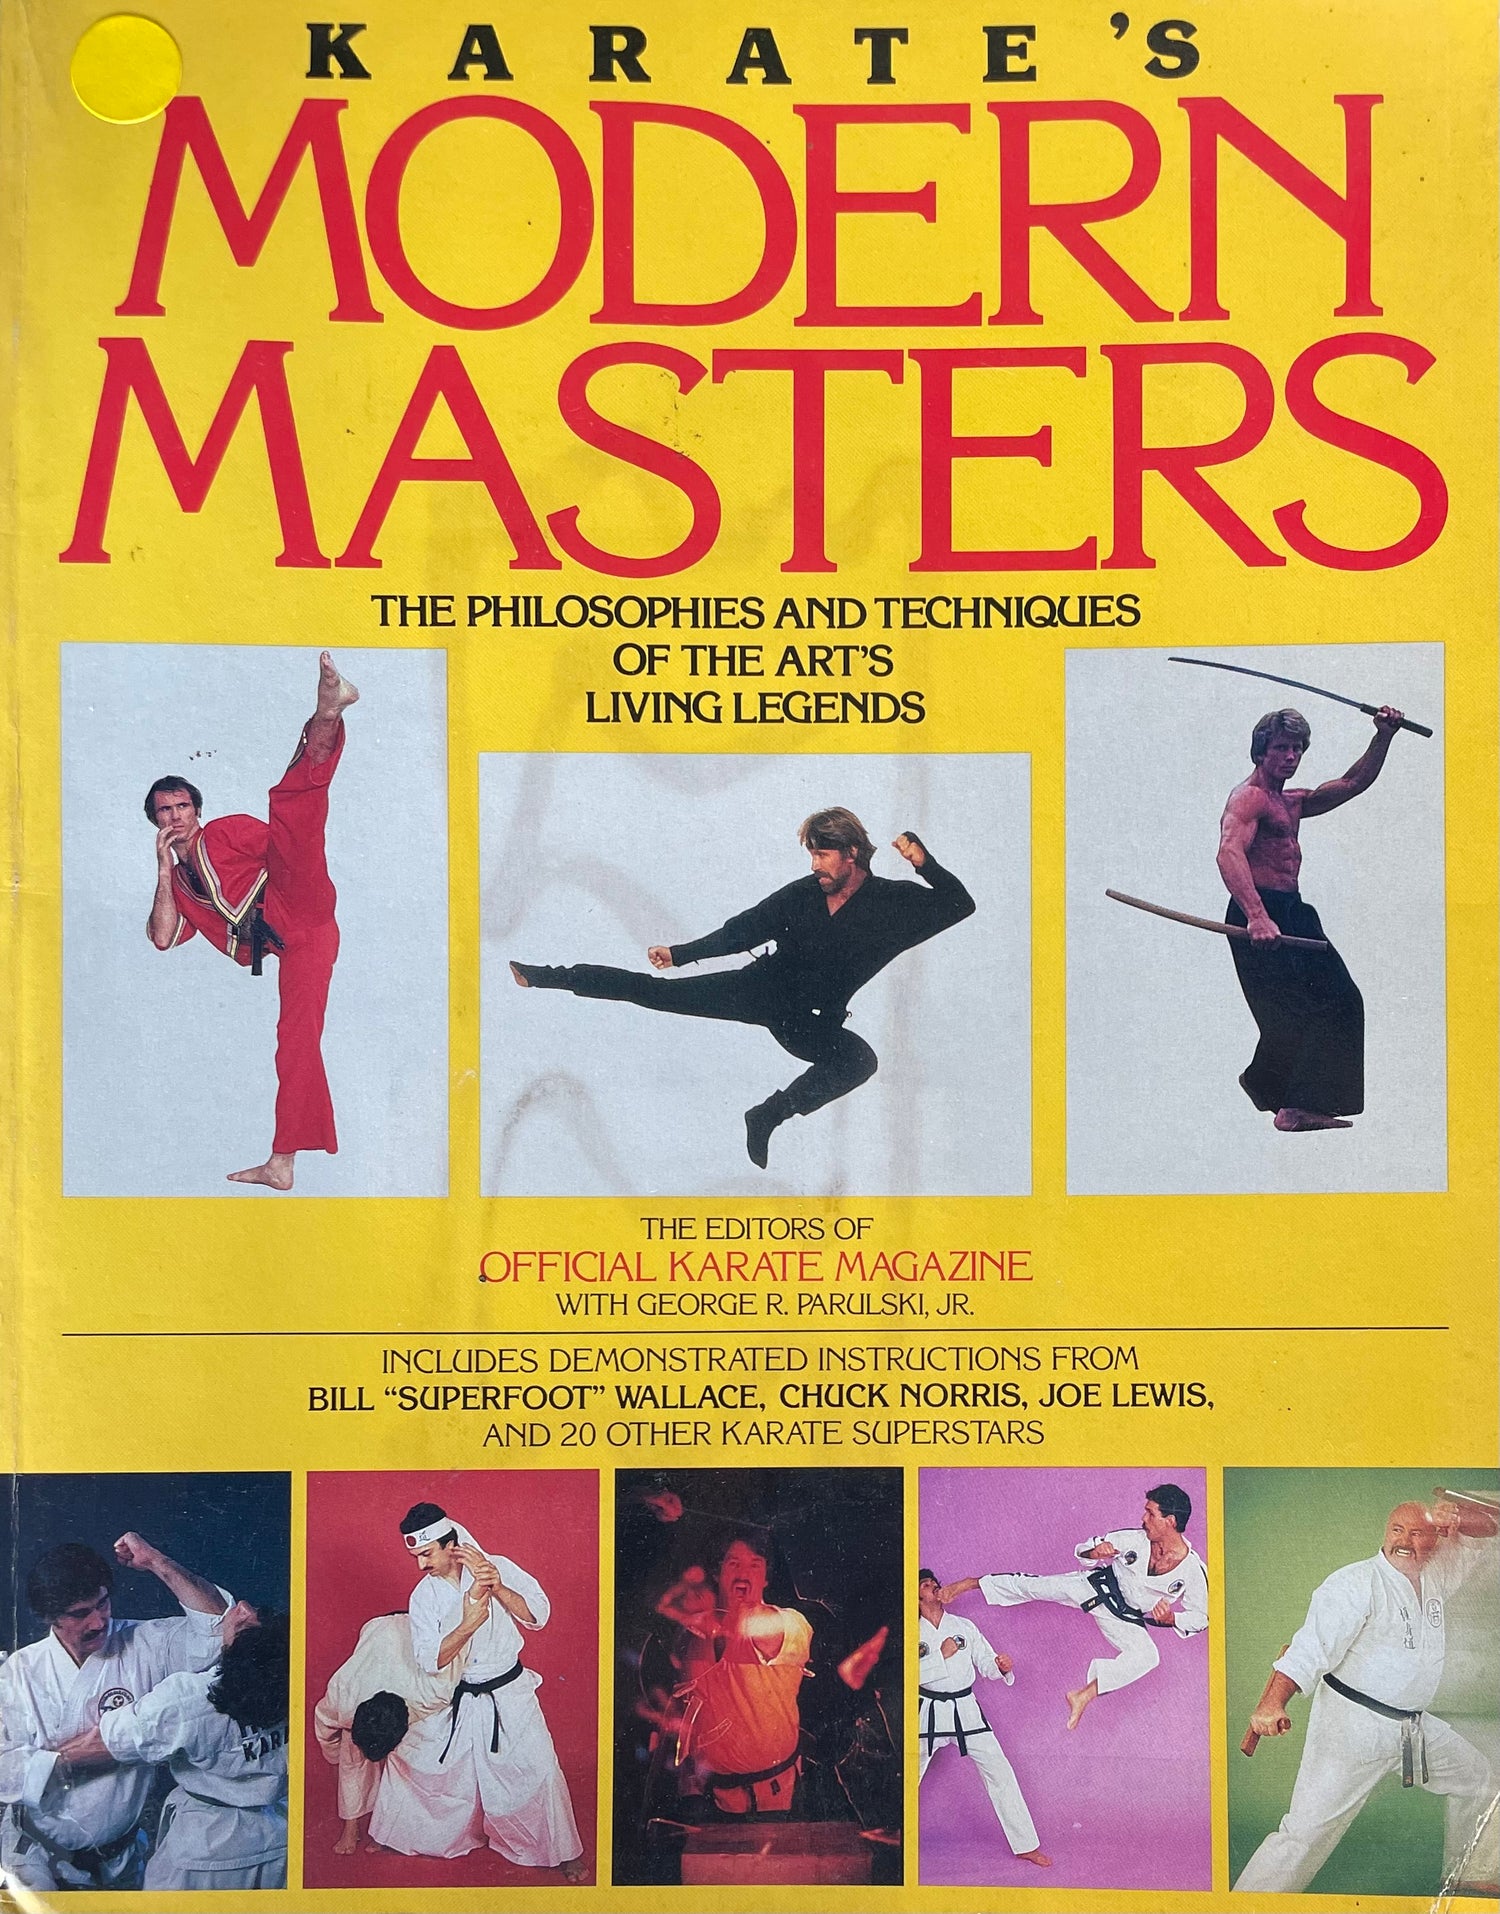 Maestros modernos del Karate: Filosofías y técnicas del libro Living Legends del arte (usado)